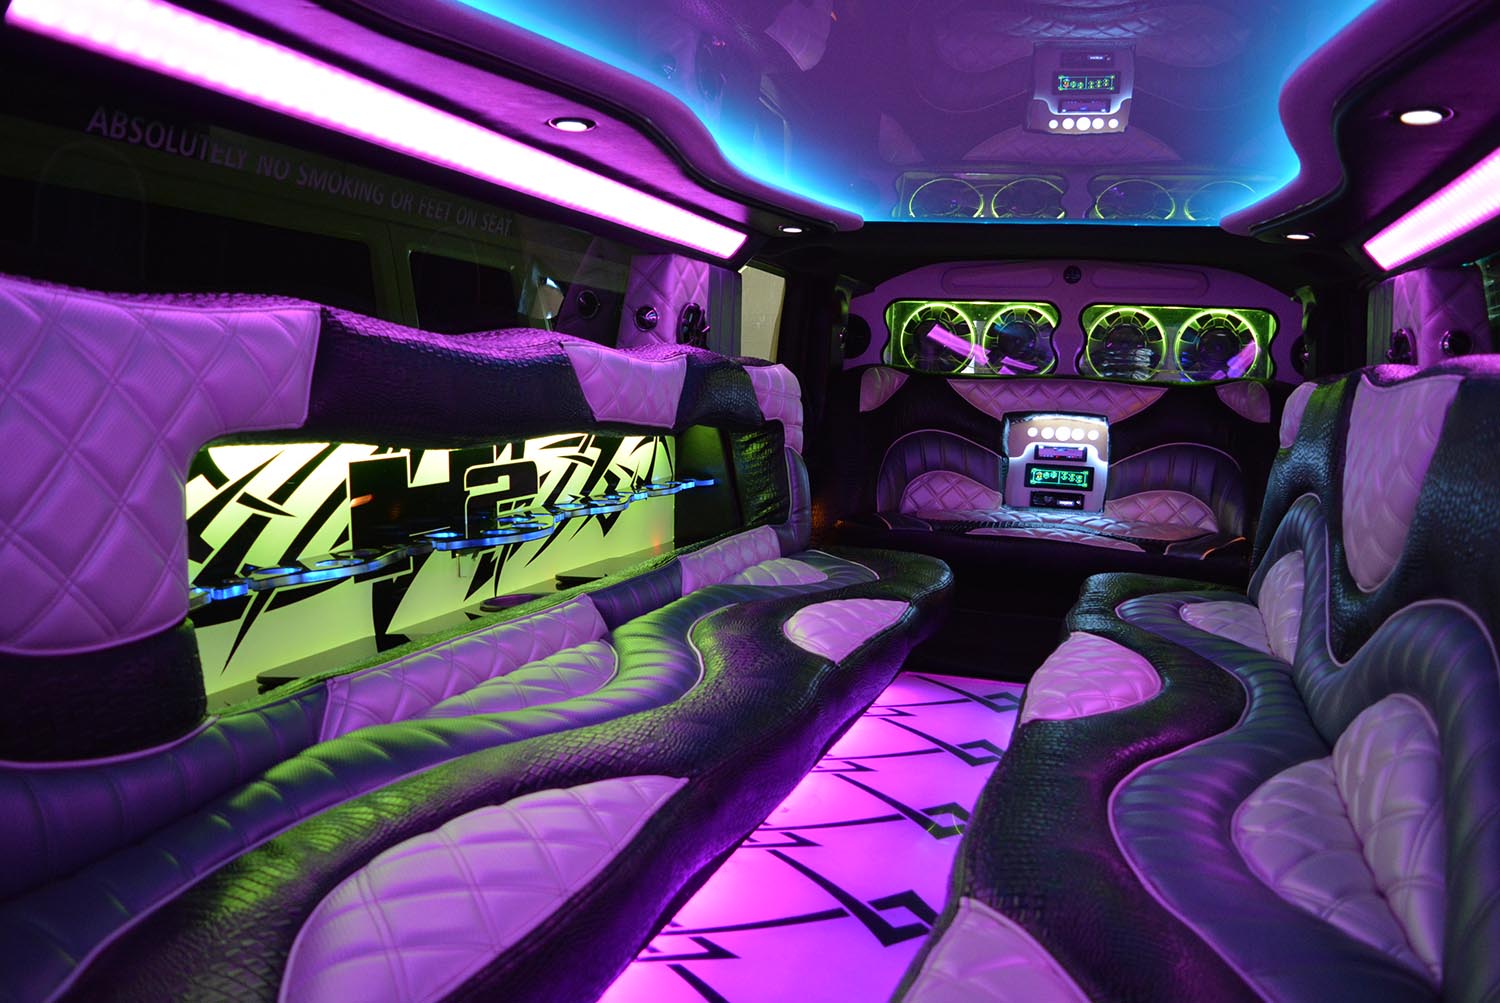 purple hummer limo